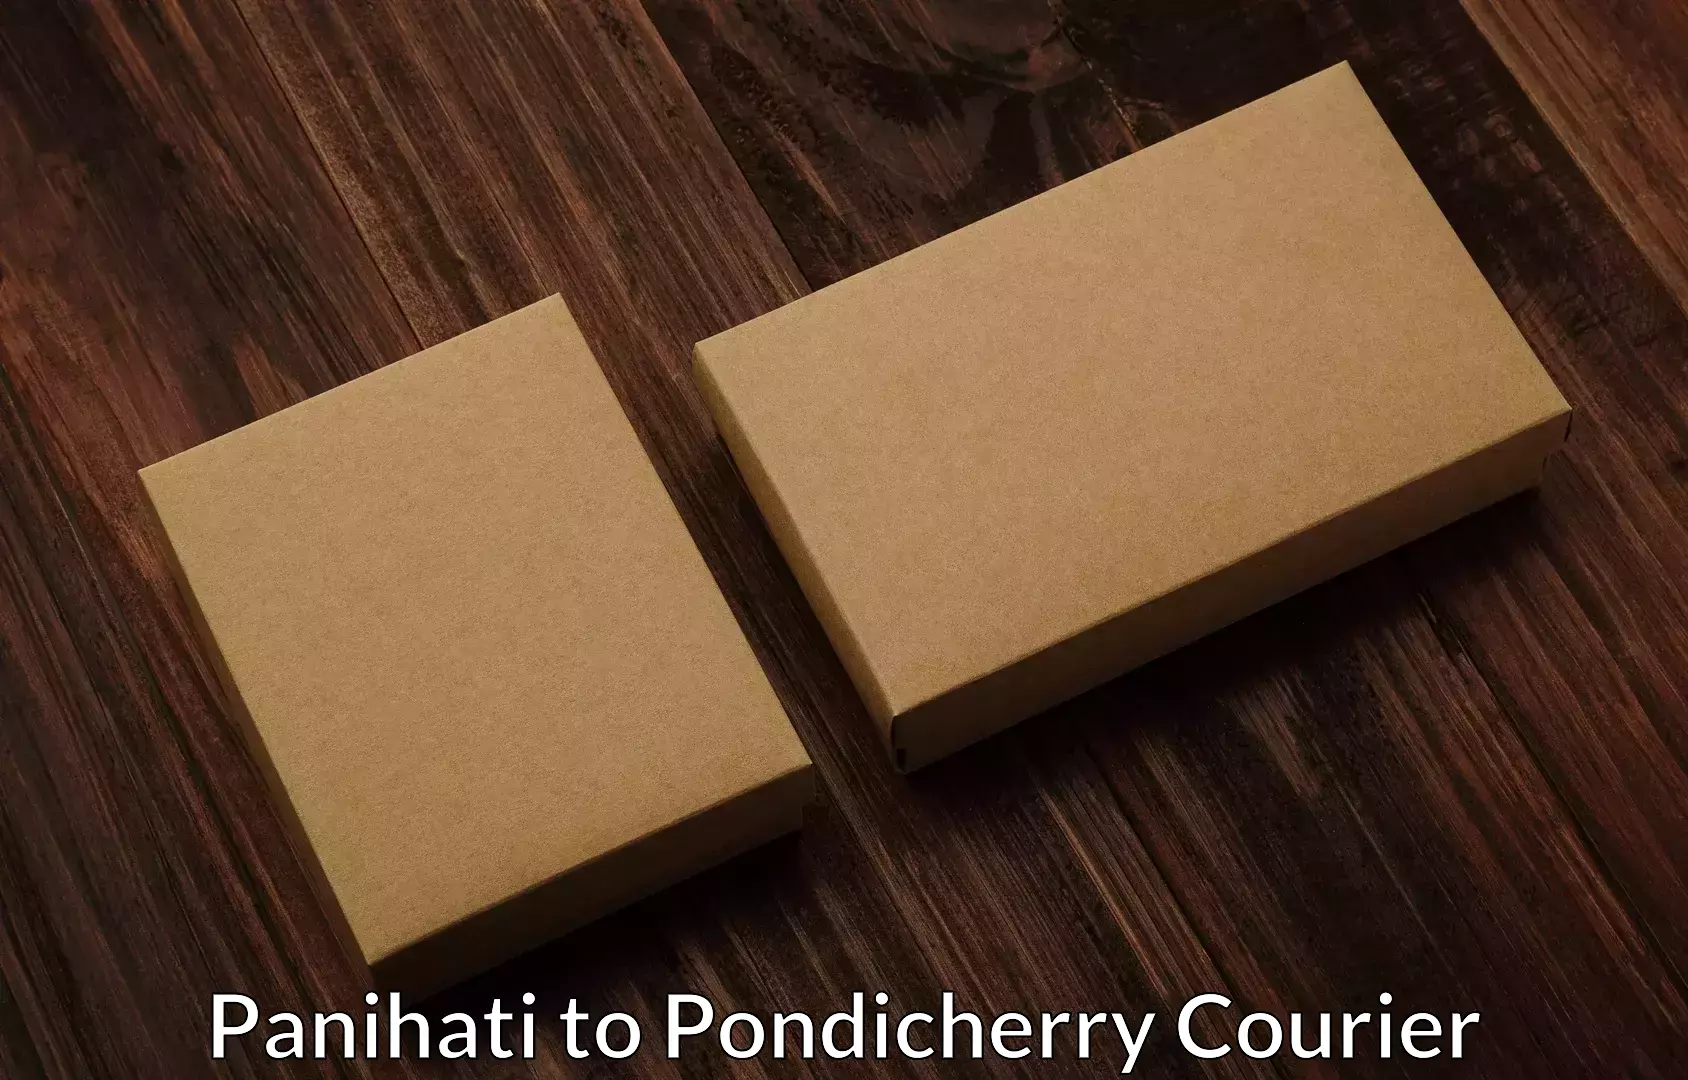 Furniture delivery service Panihati to Pondicherry